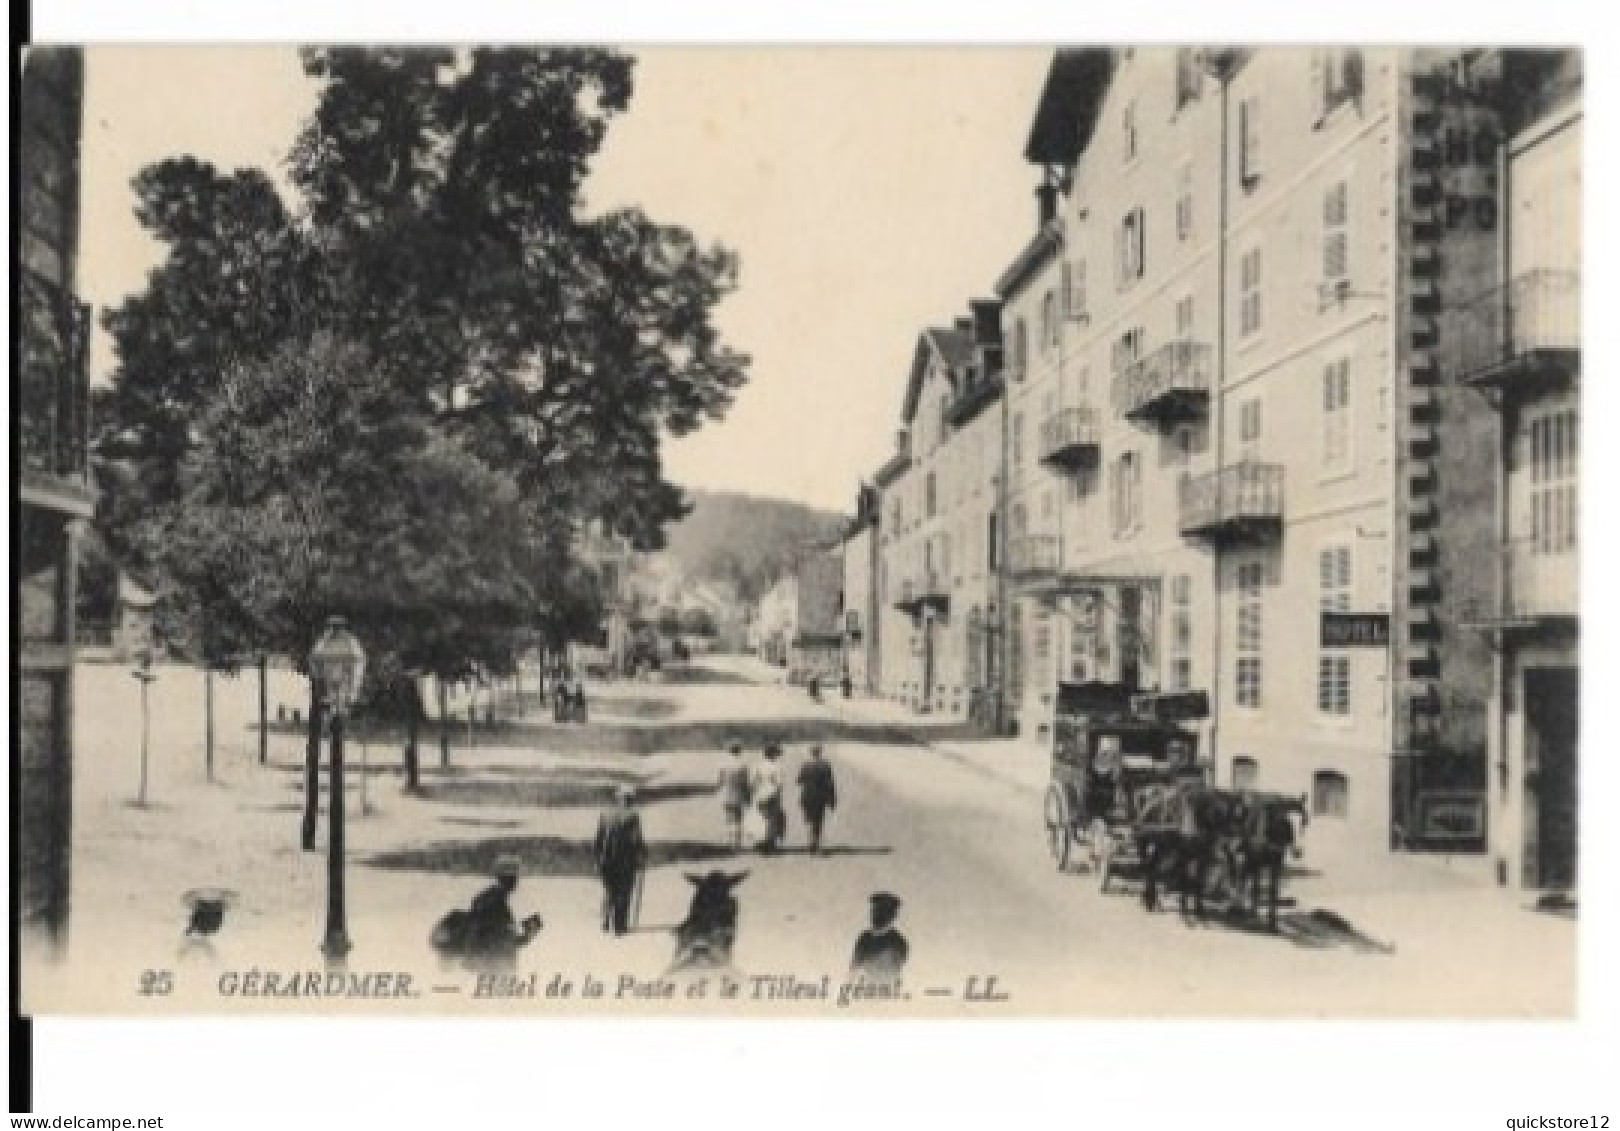 Gérardmer - Hotel De La Poste Et Le Tilleu Geant.-LL - 6822 - Unclassified